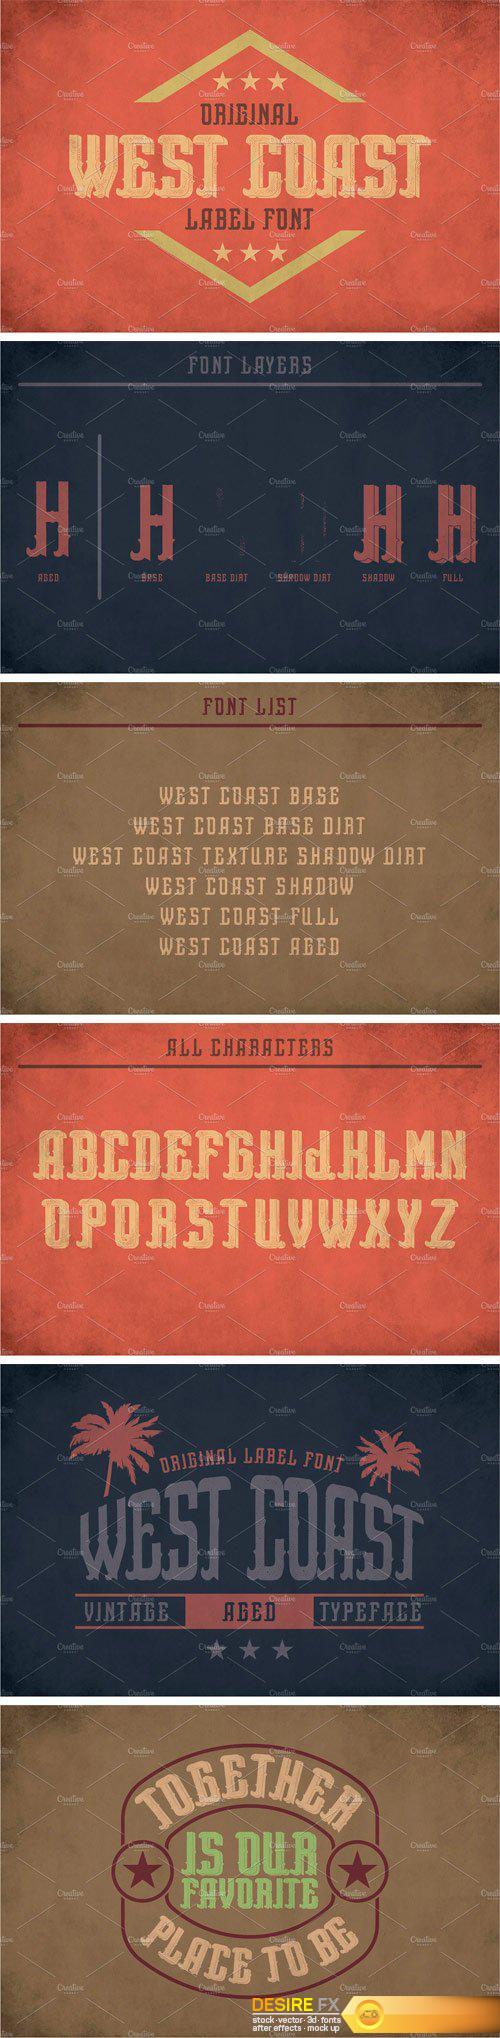 CM - West Coast Vintage Label Typeface 2392986